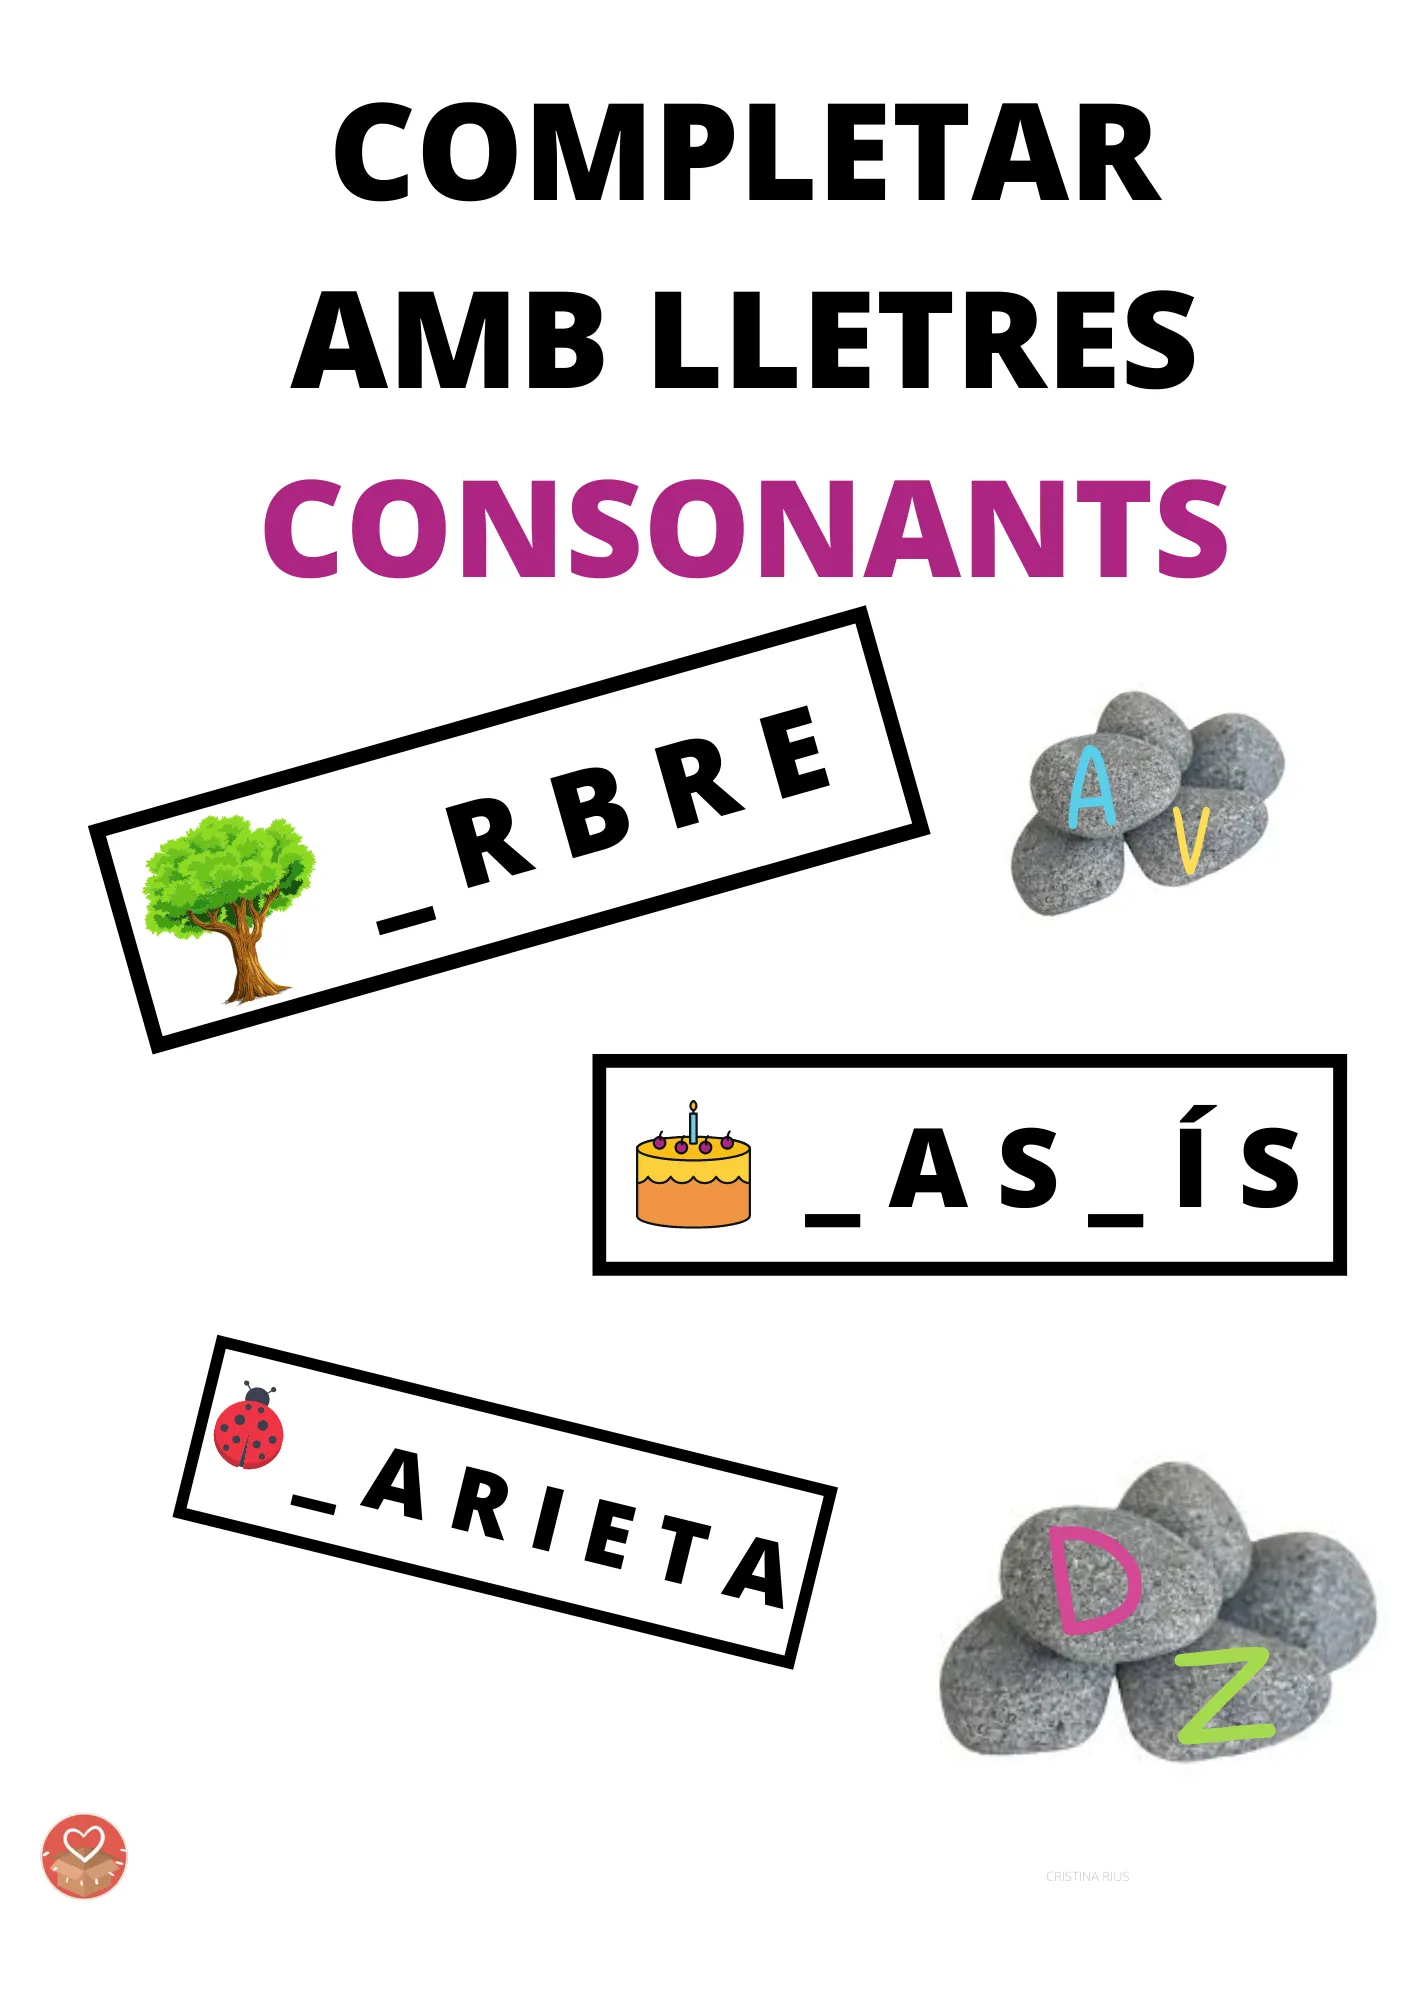 COMPLETAR AMB LLETRES - CONSONANTS